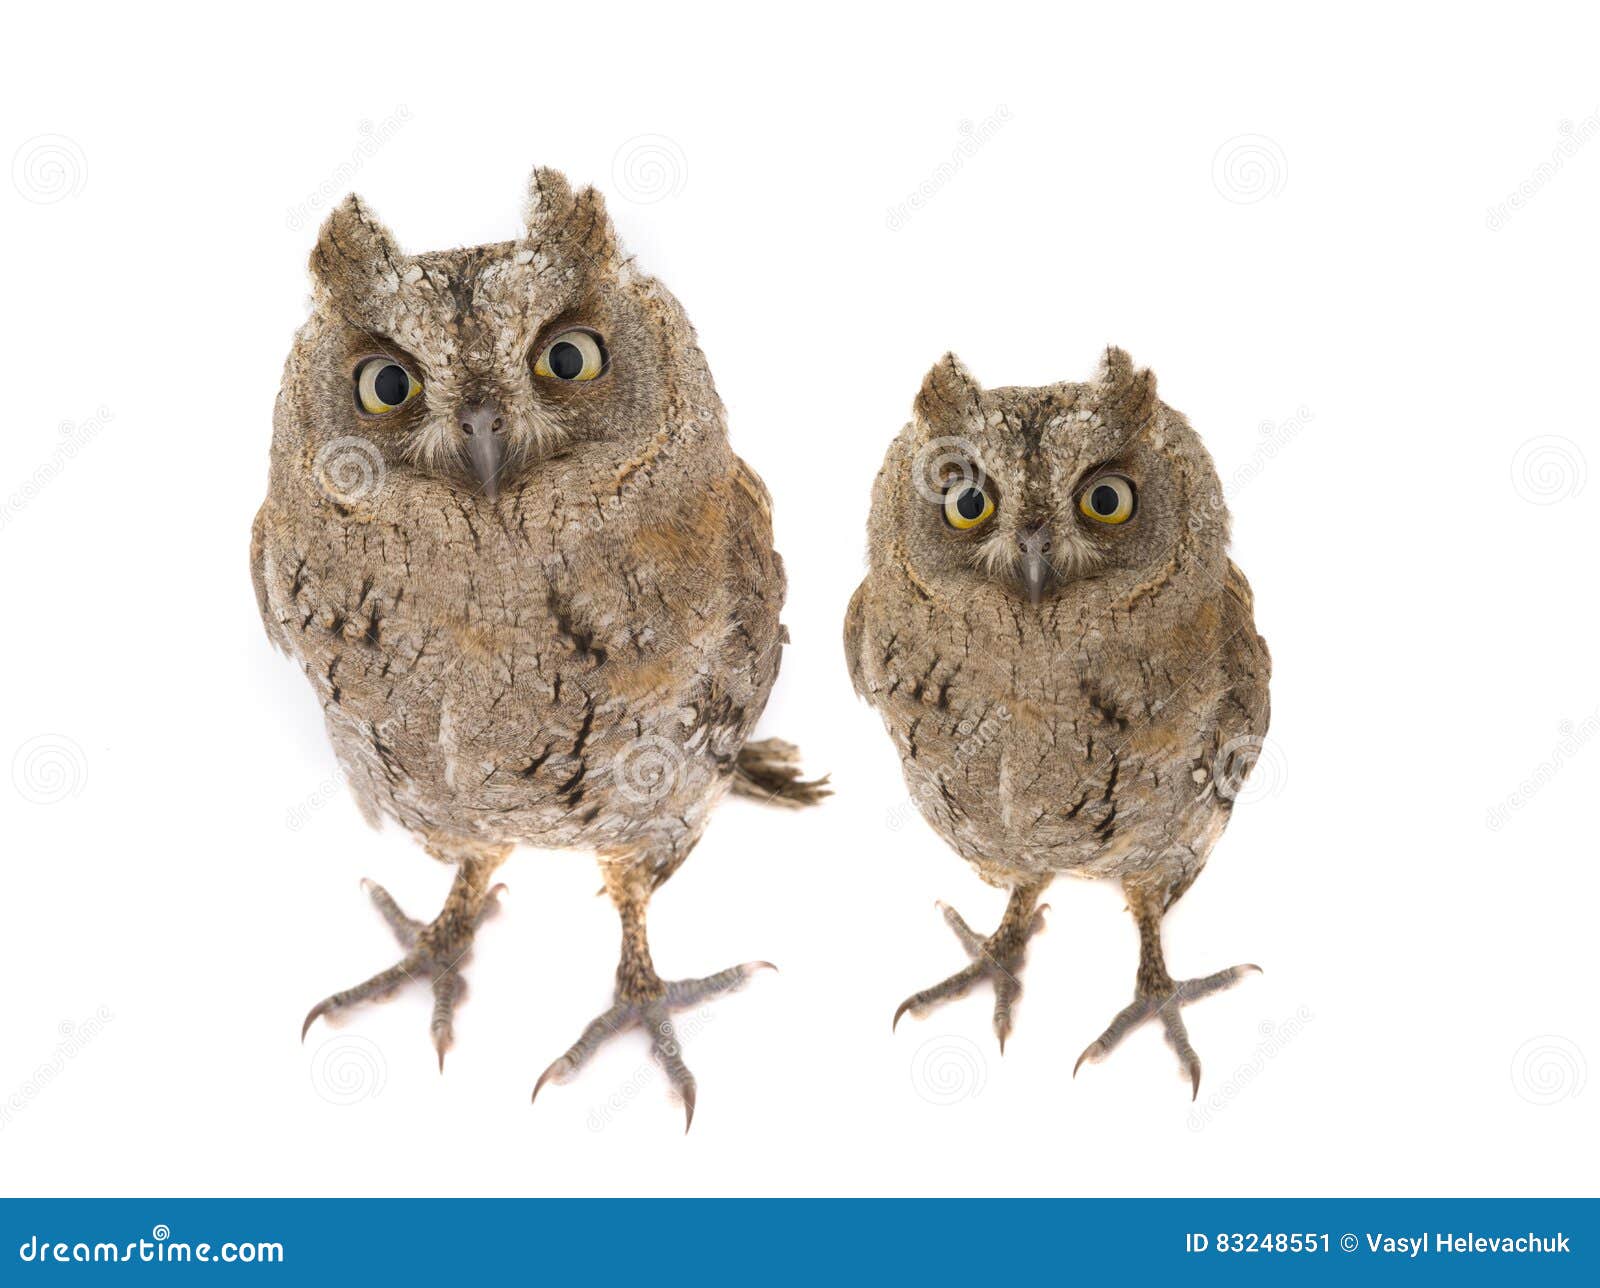 two european scops owl